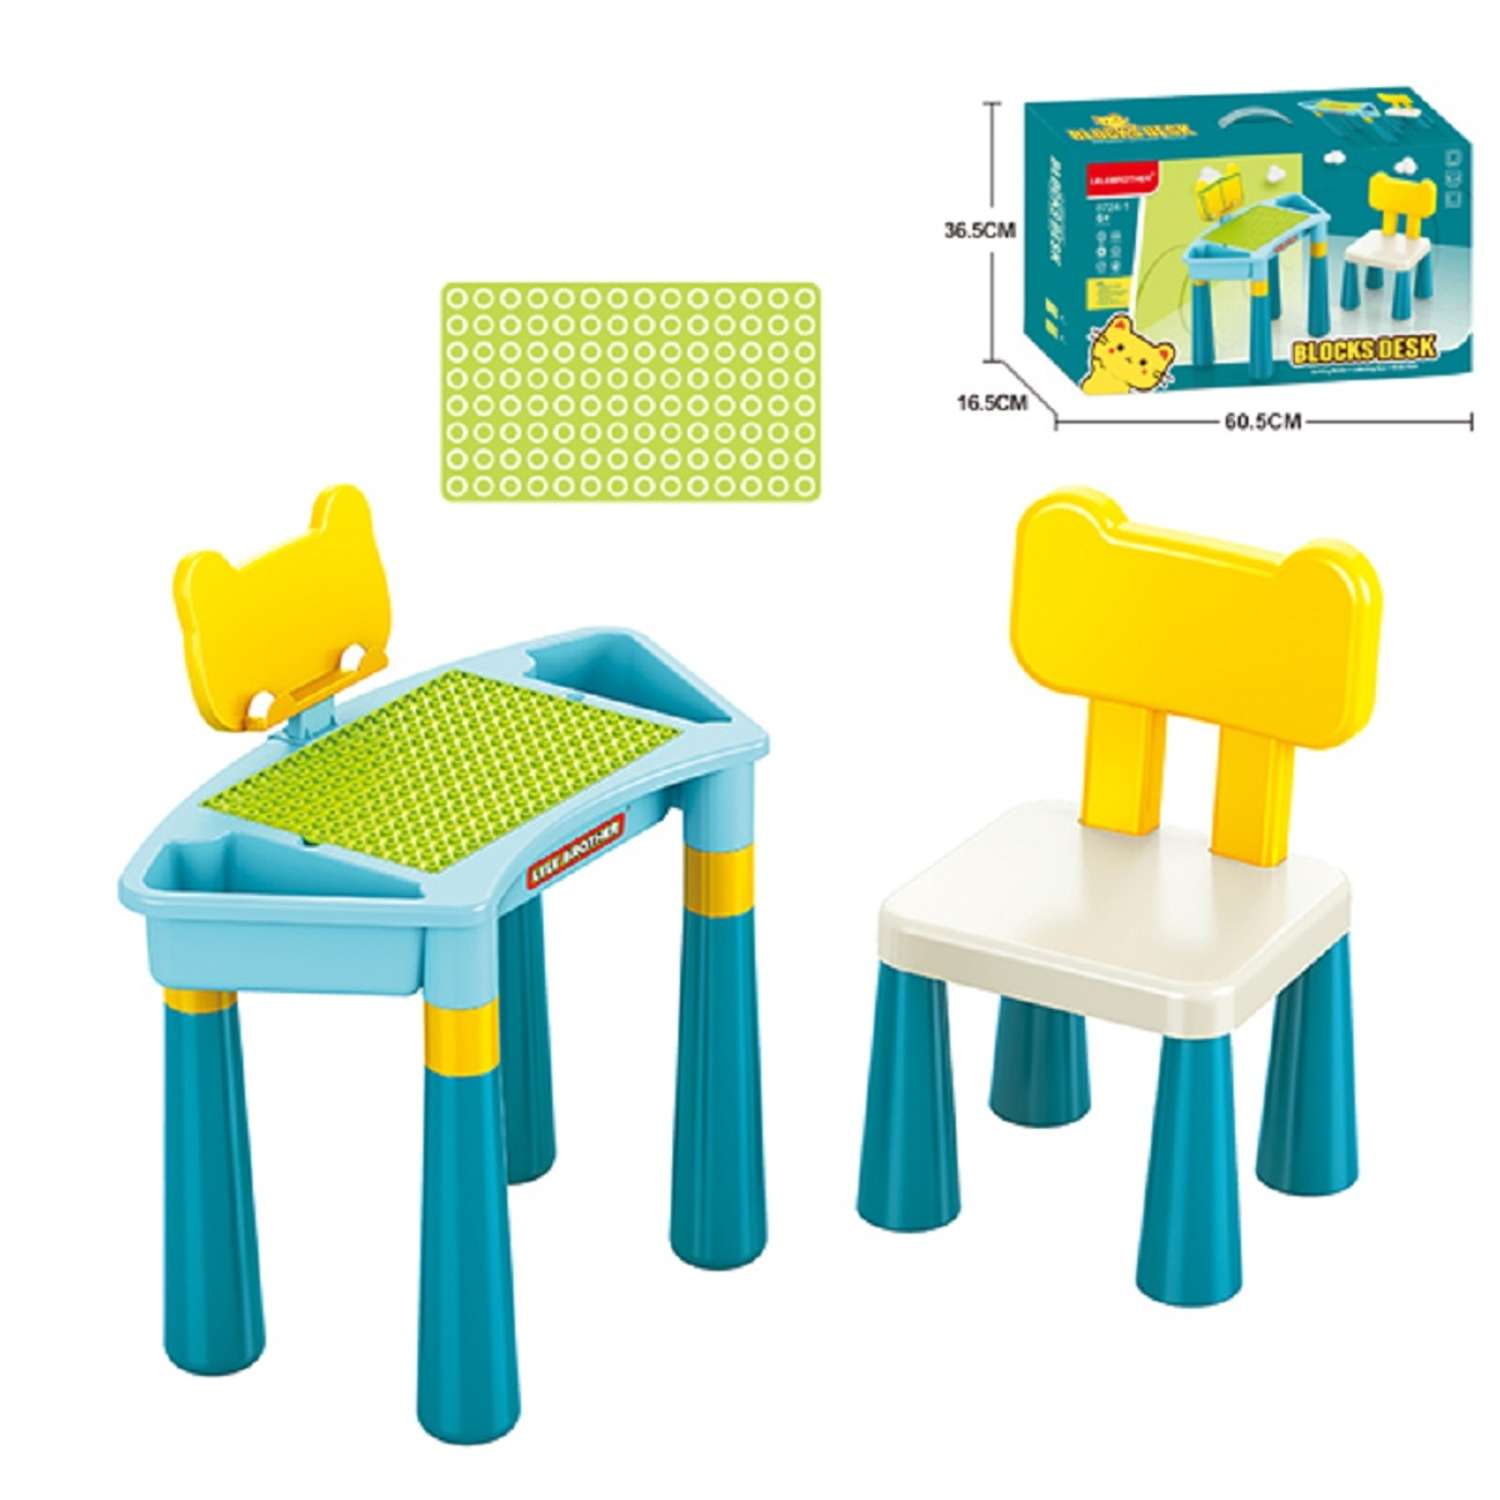 Стол для конструирования S+S игровой набор для сборки конструктора стол и стул - фото 2